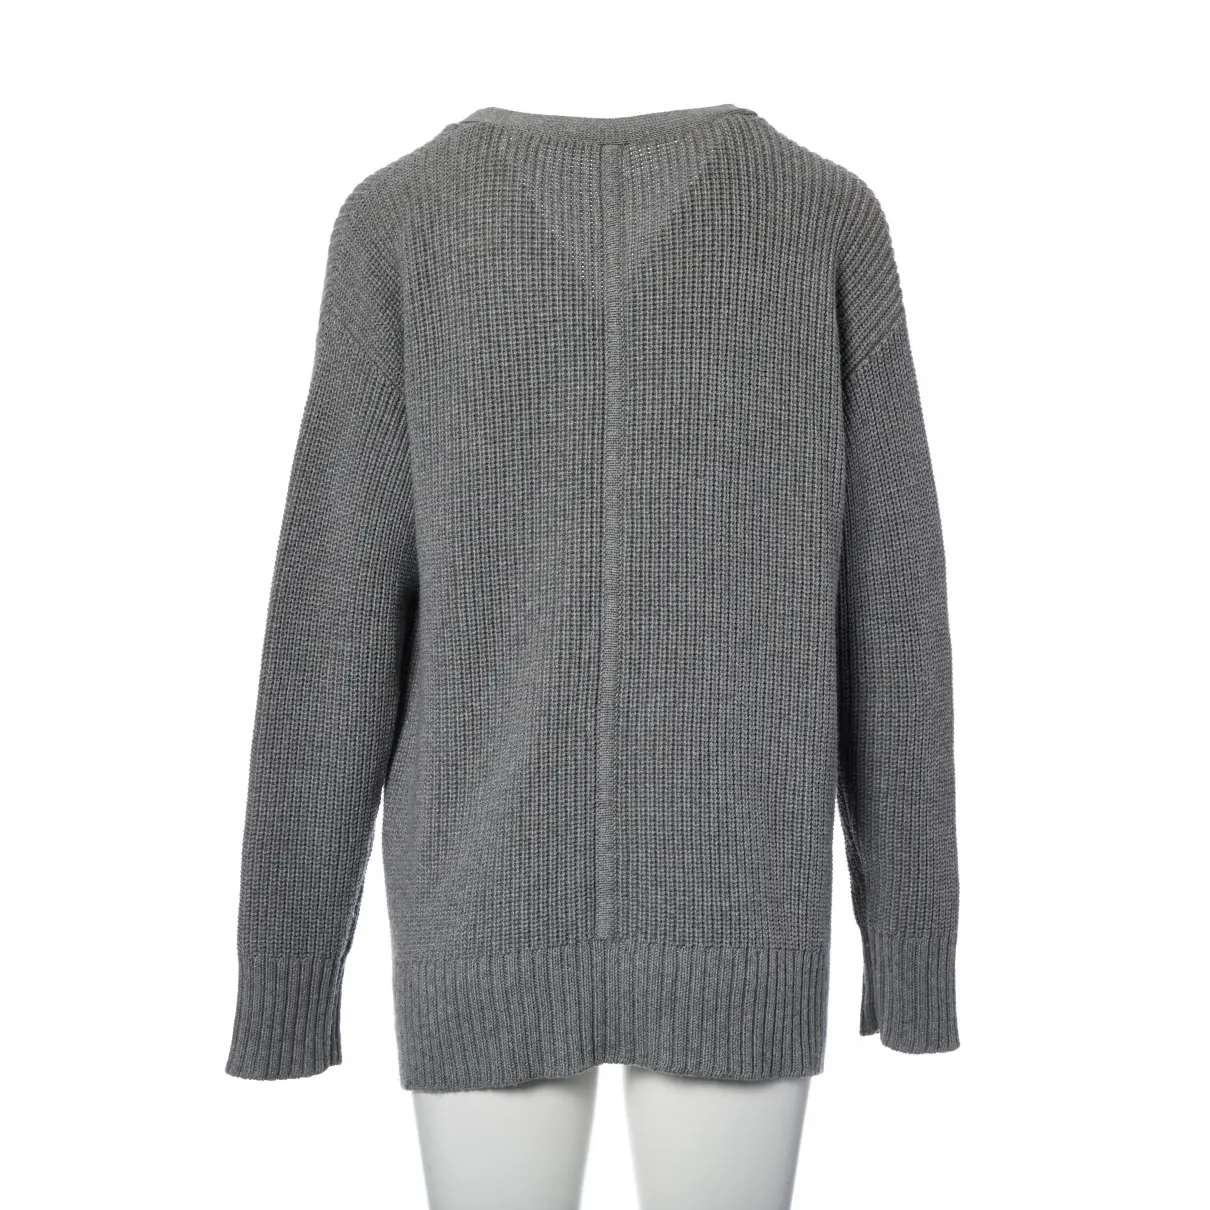 Buy Adam Lippes Grey Cotton Knitwear online